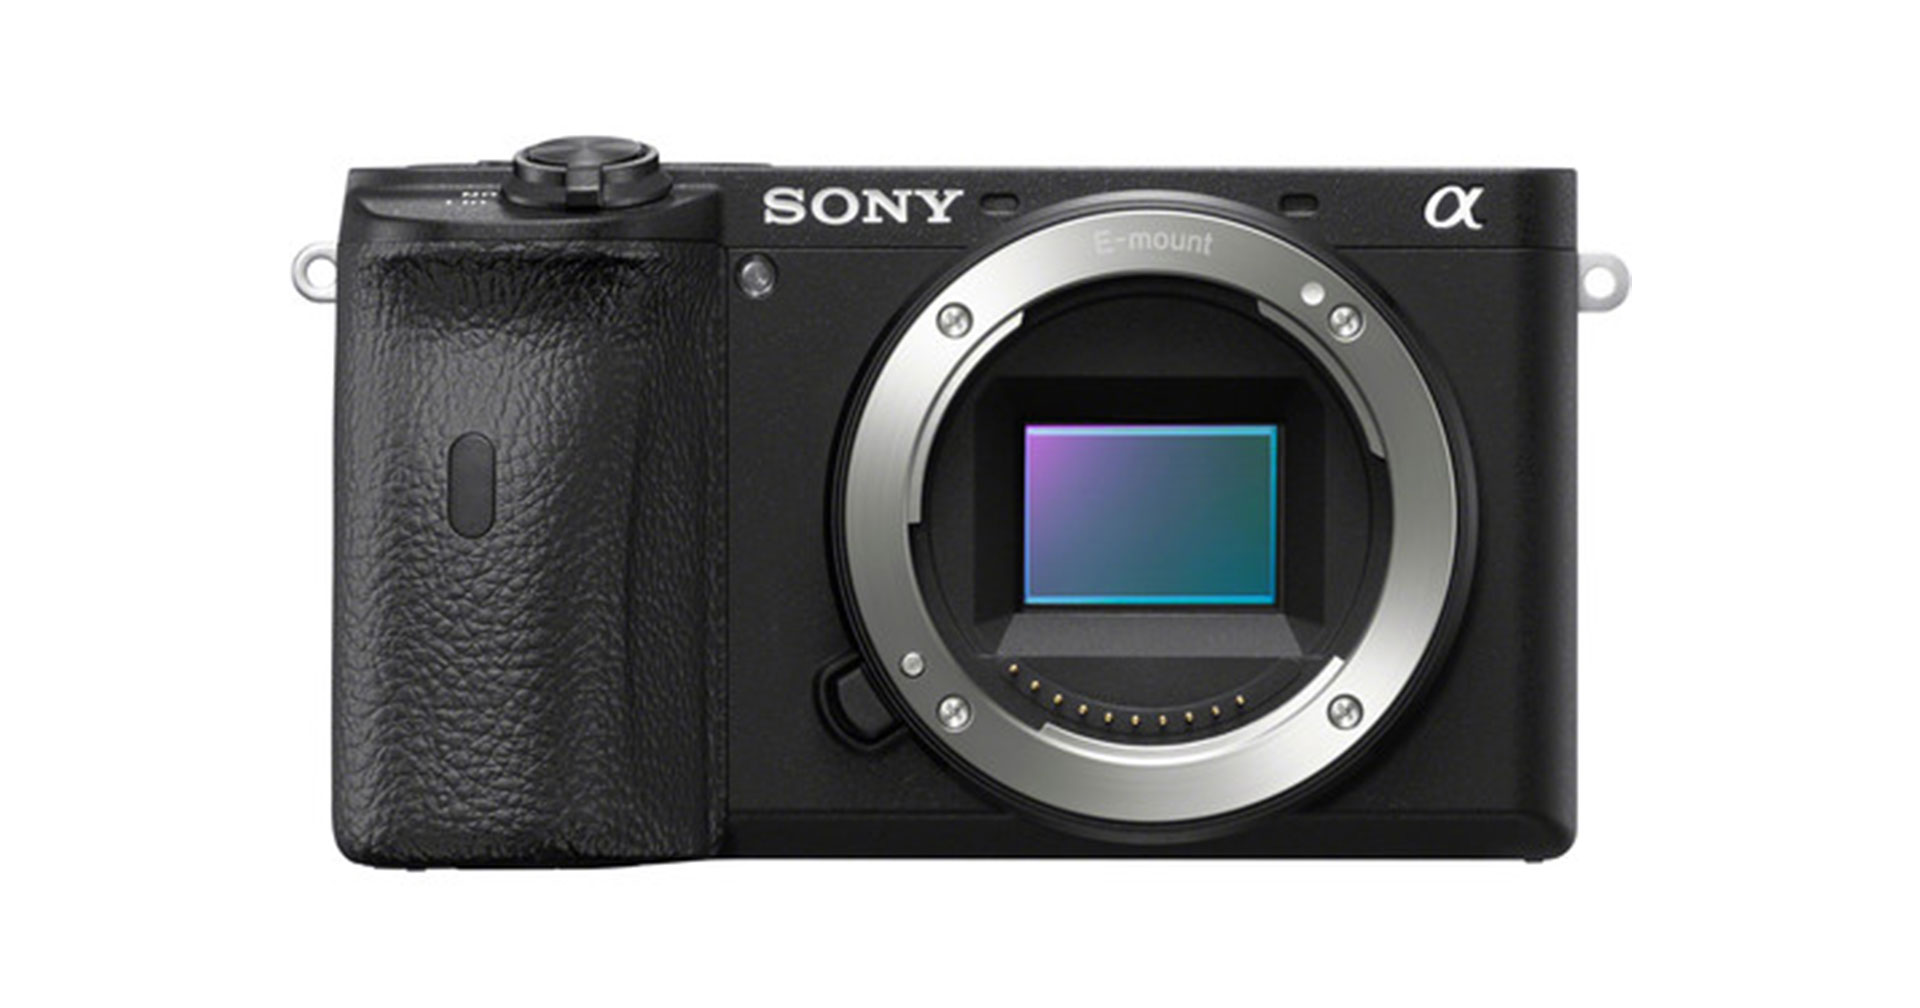 ลือ! Sony เตรียมเปิดตัวกล้องมิเรอร์เลส APS-C เรือธงตัวใหม่ ในเดือนพฤษภาคมนี้